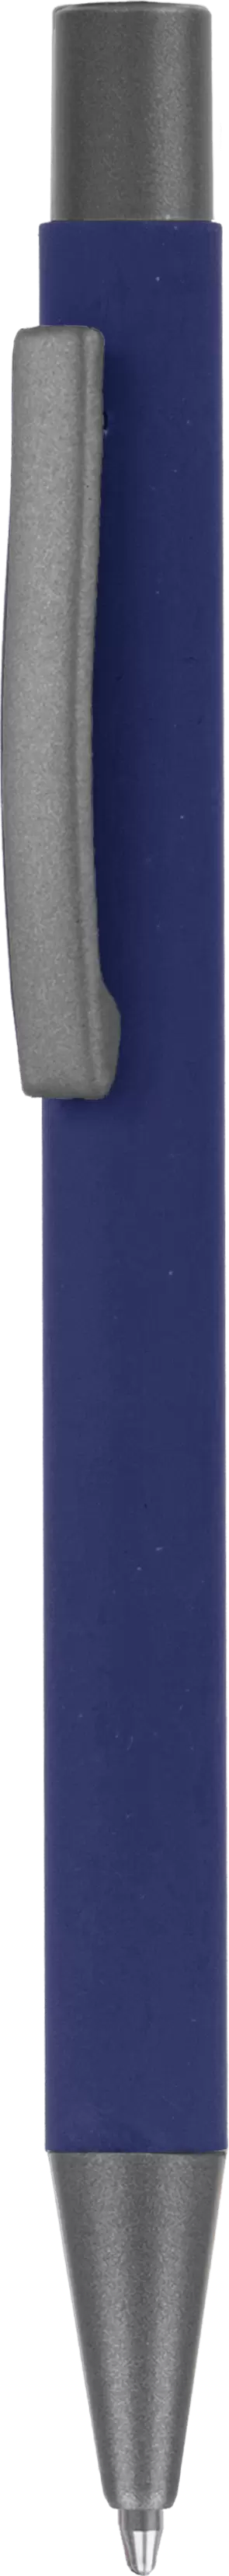 Ручка MAX SOFT TITAN Темно-синяя 1110-14